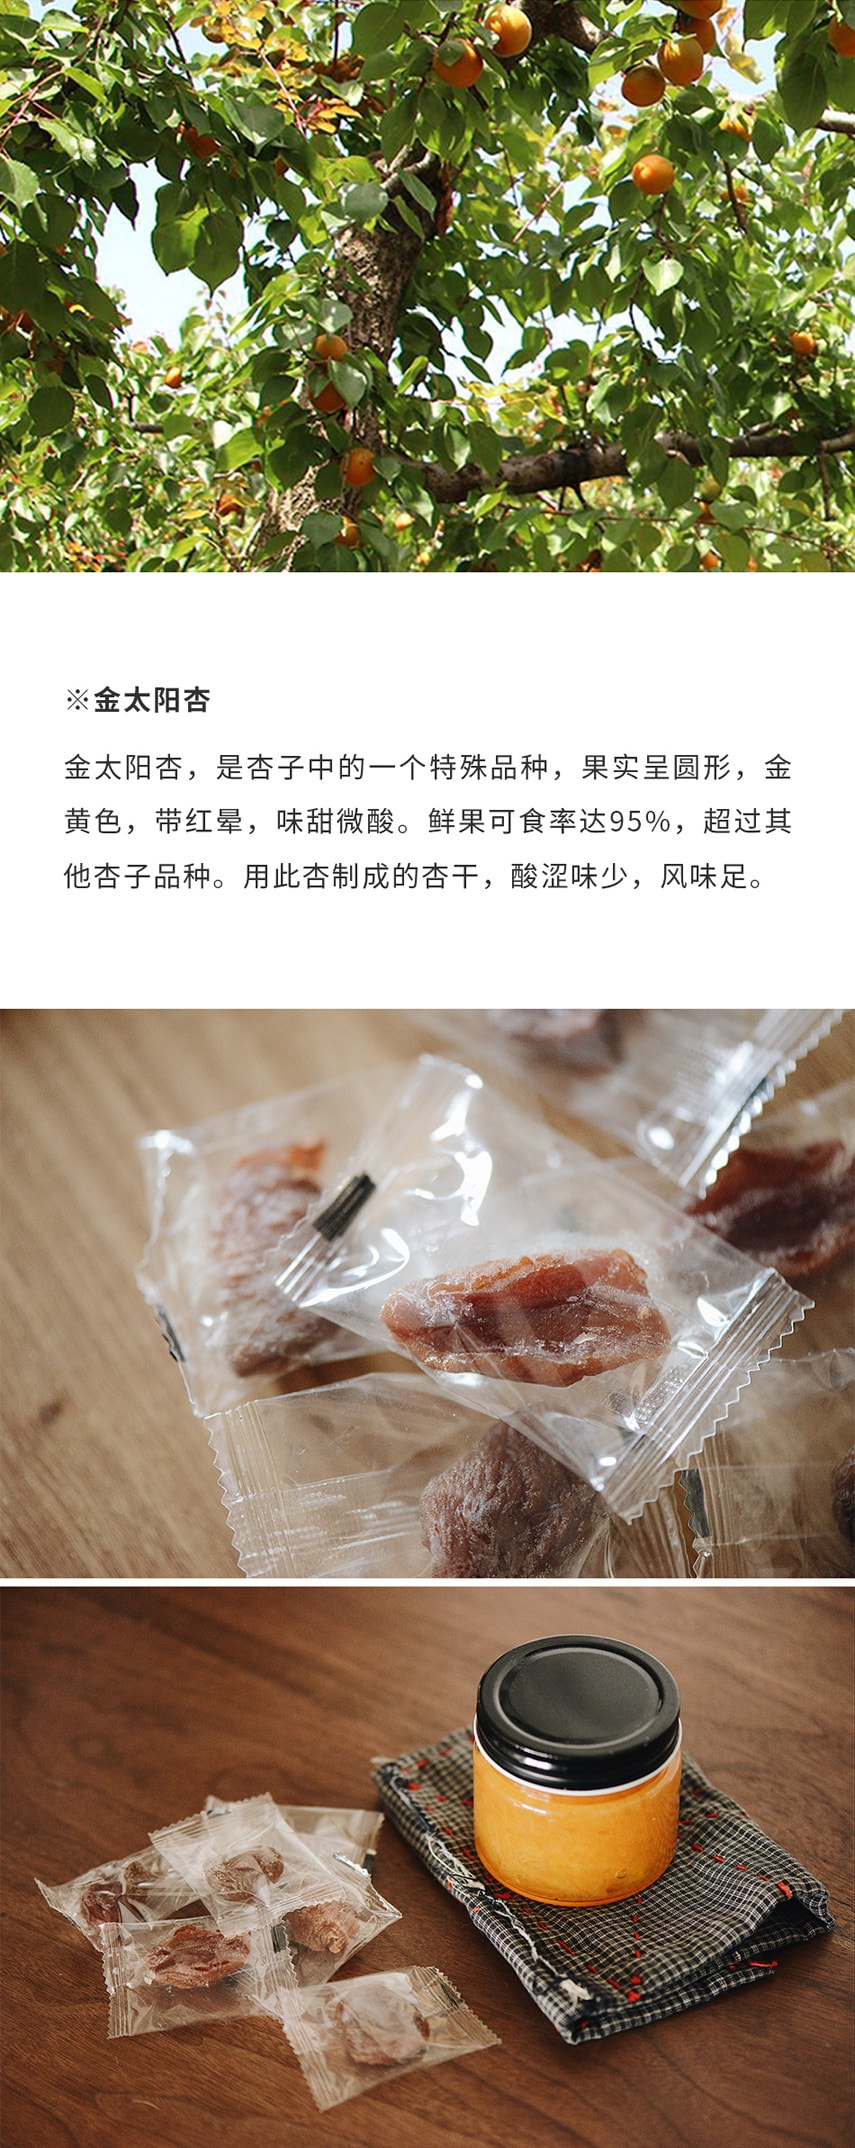 【甄味果乾】金杏乾 250克 自然熟成 茶點零食 無添加 南食召品牌